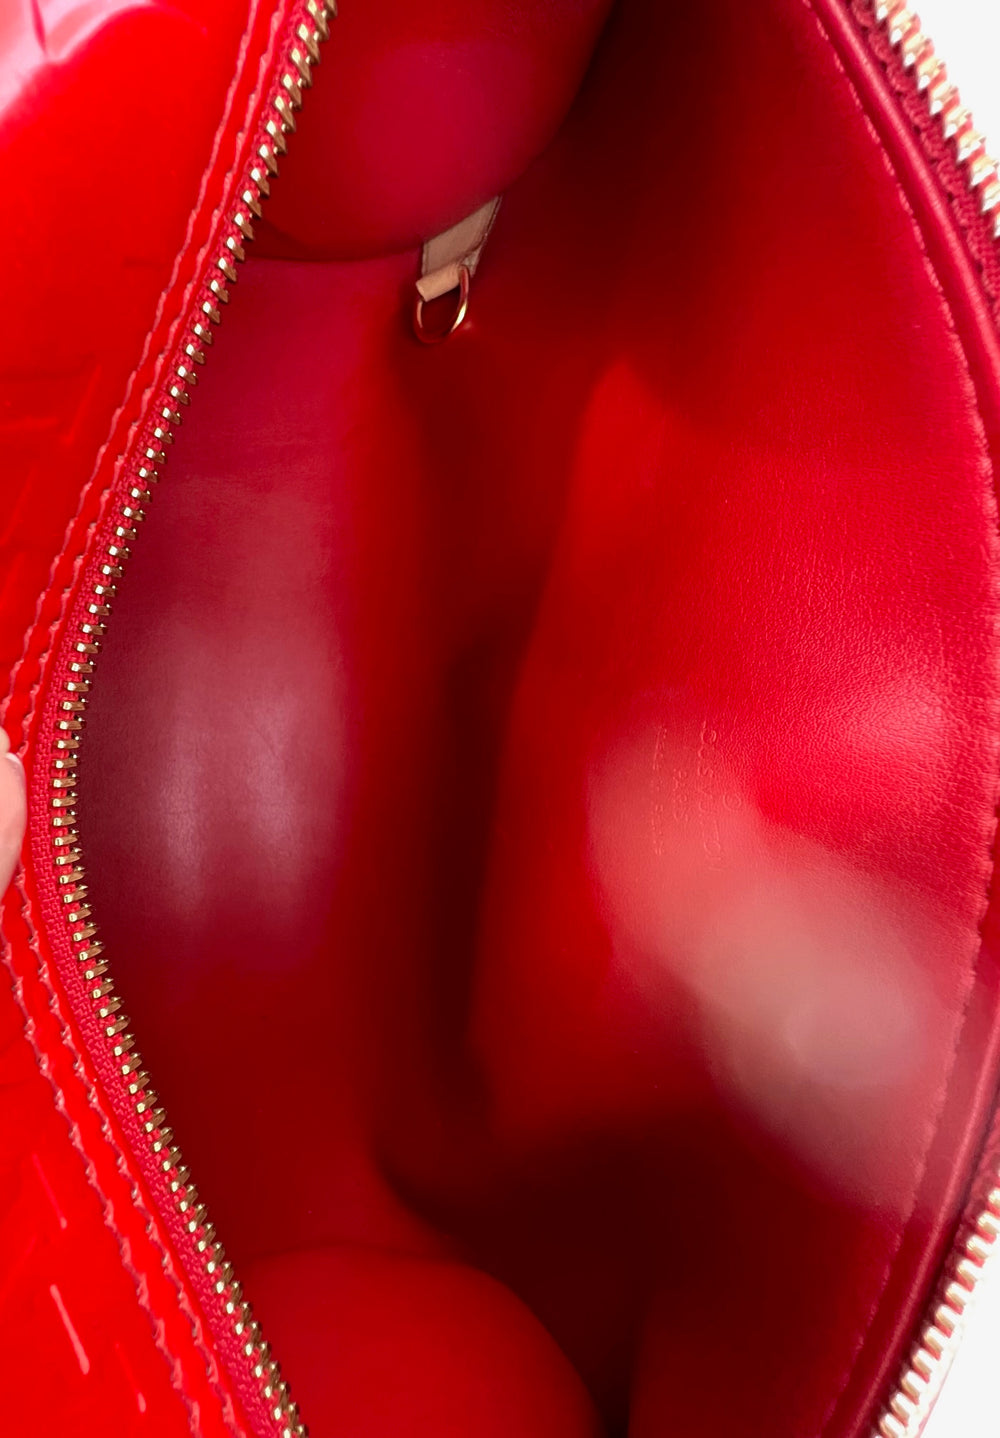 Louis Vuitton-Monogram Papillon 30 Shoulder Bag with Pochette - Couture  Traders